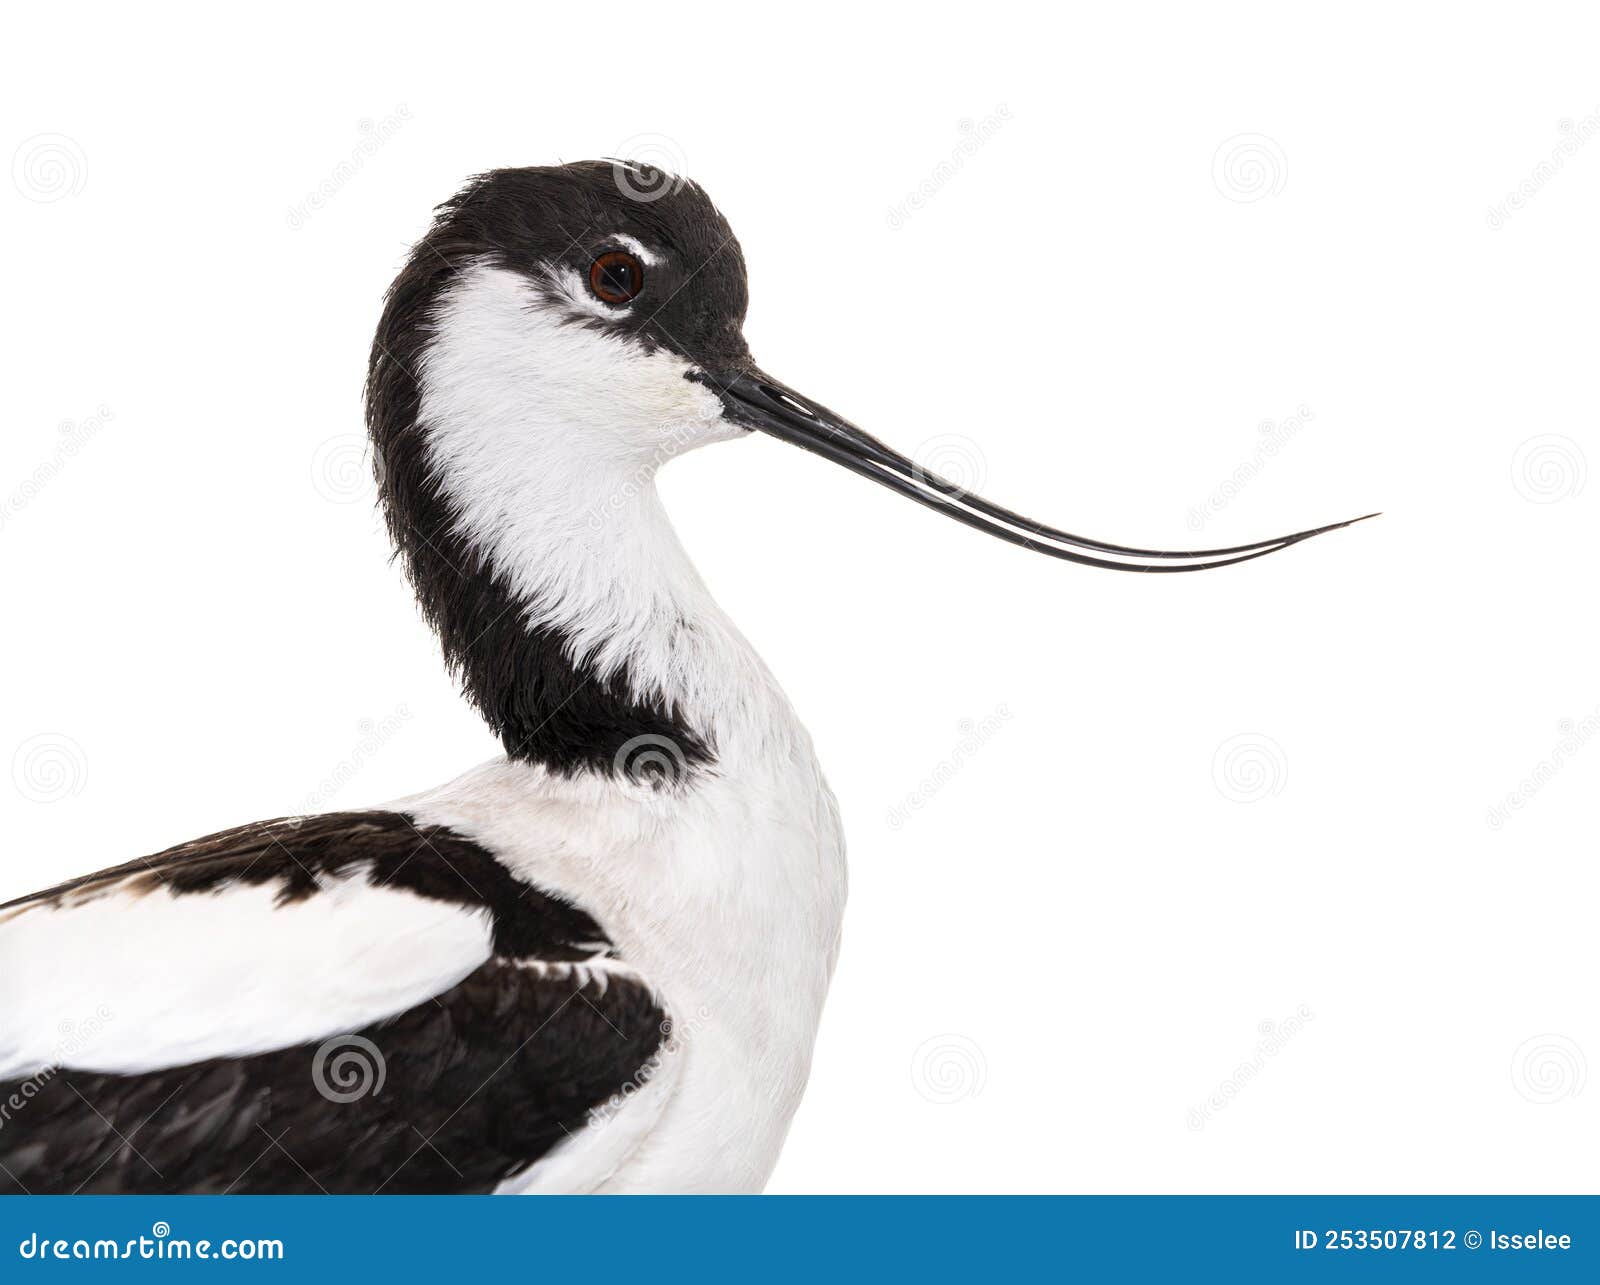 pied avocet, recurvirostra avosetta,  black and white wader, stilt family